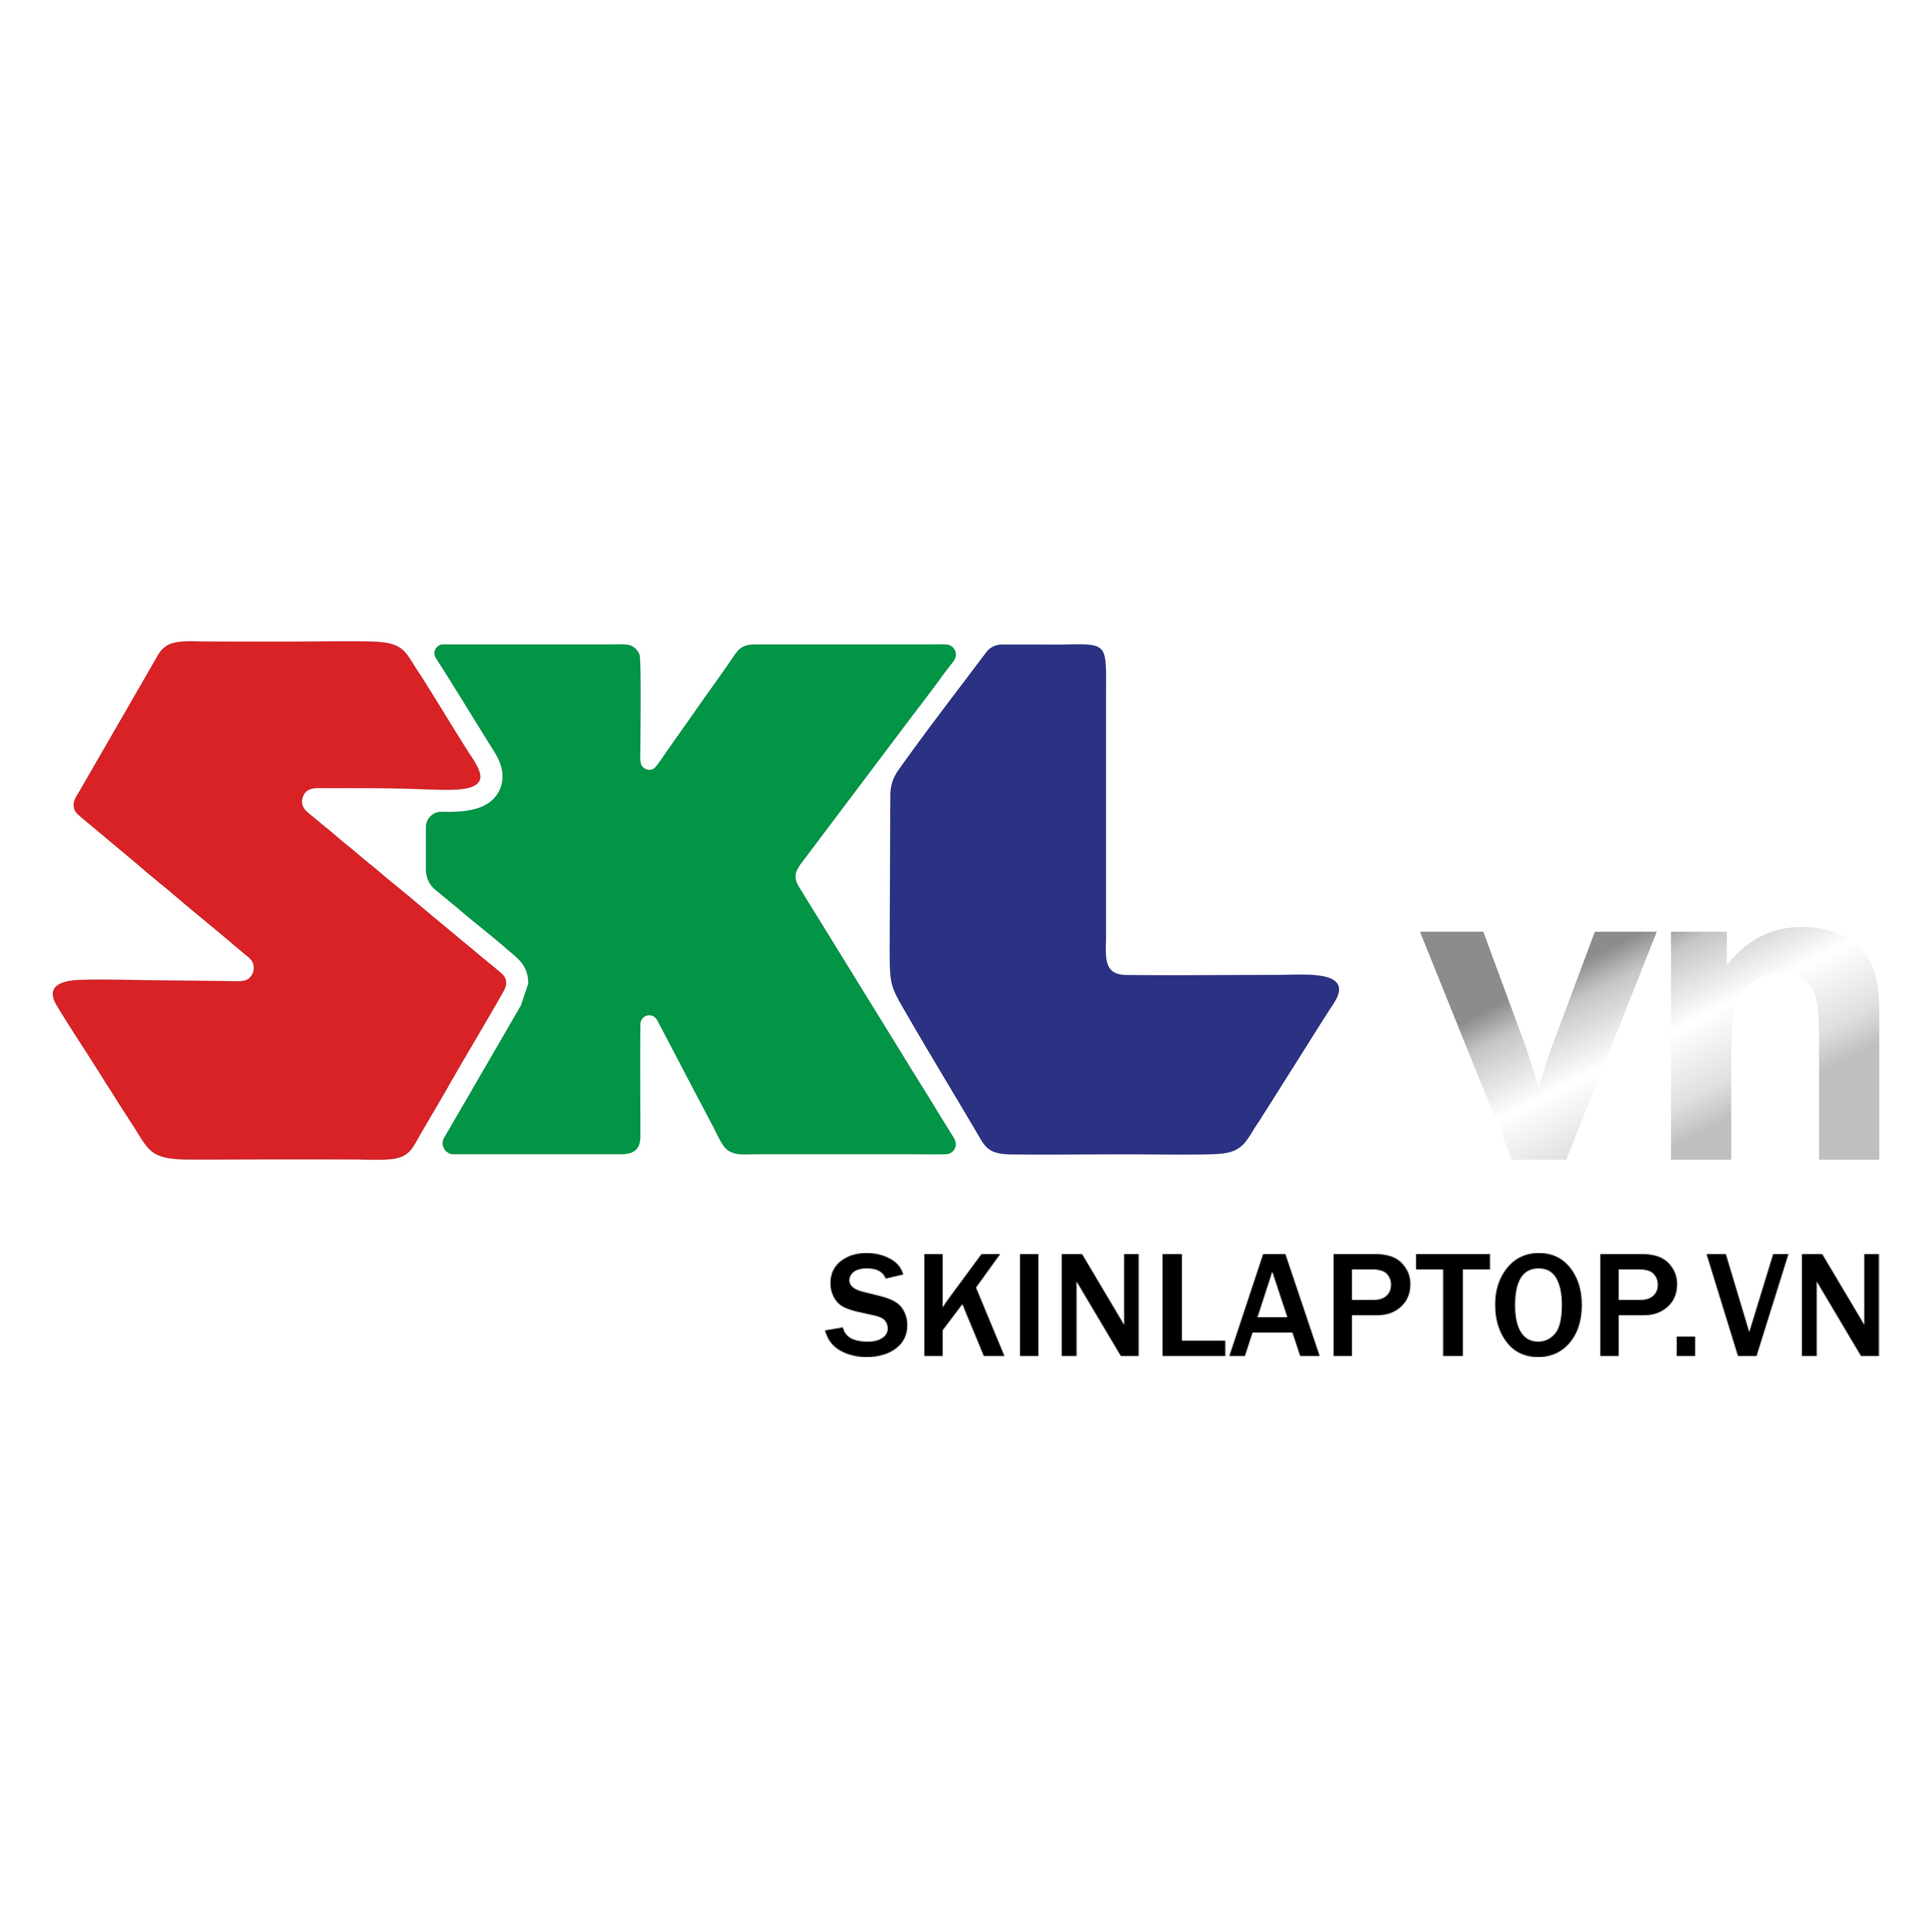 SkinLaptop.vn